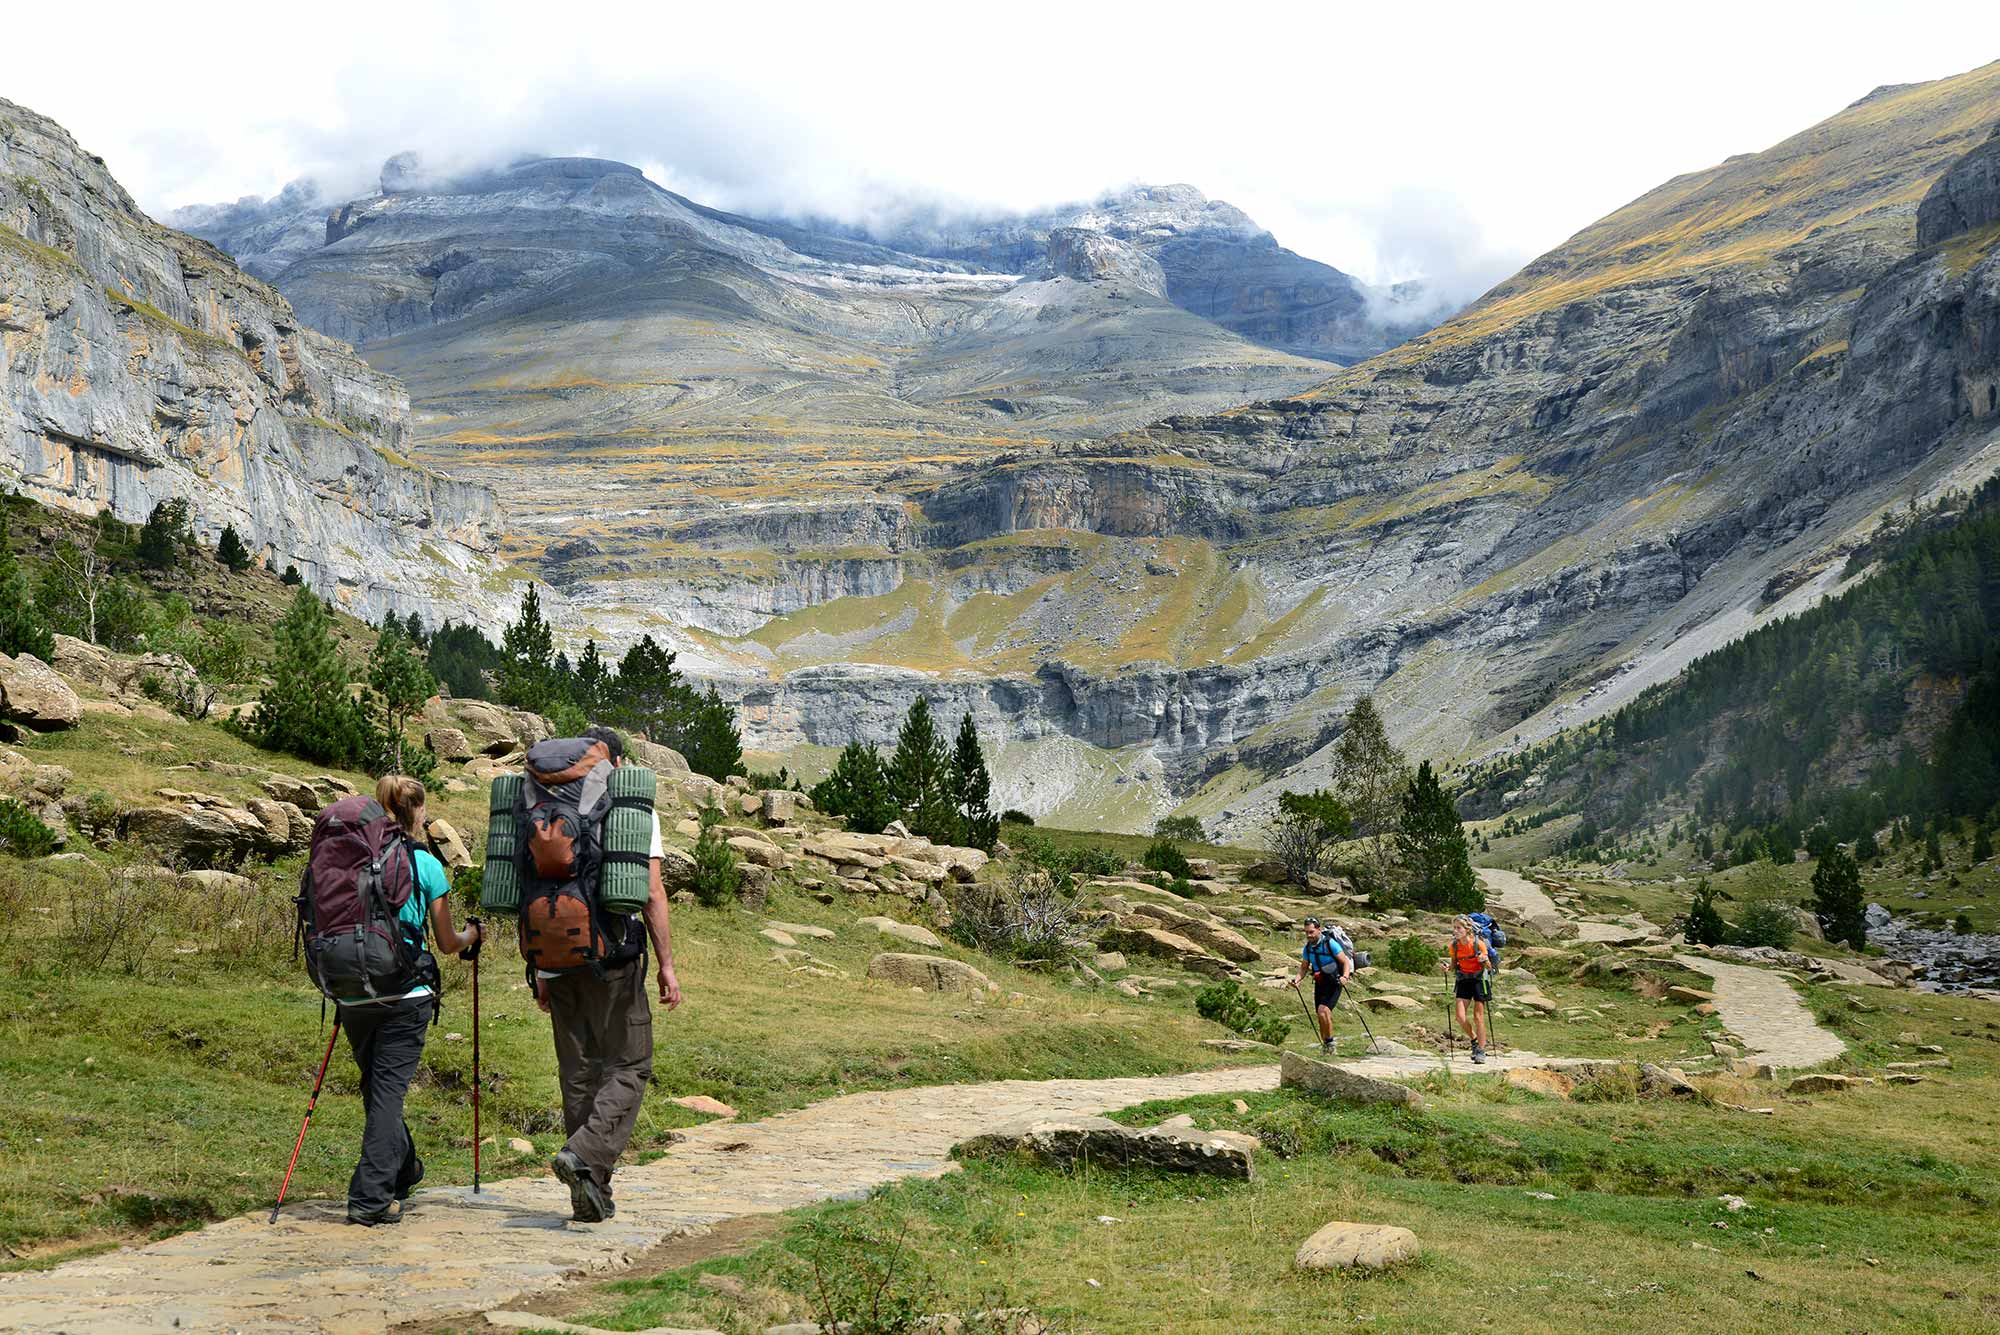 Caminar por la montaña: consejos para practicar senderismo | Guía Repsol | Guía Repsol